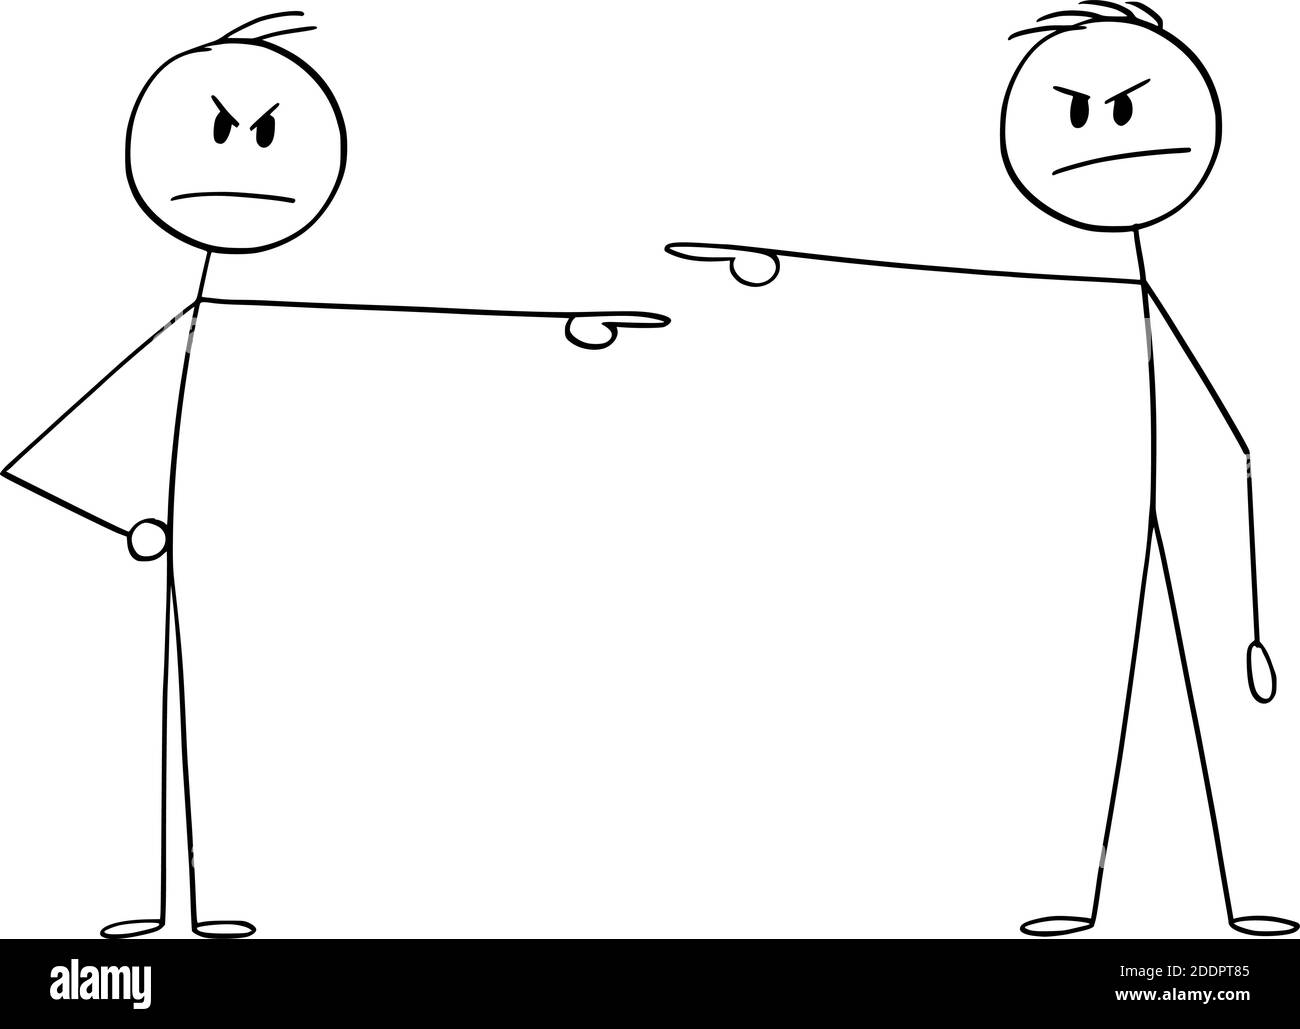 Vektor Cartoon Stick Figur Illustration von zwei Männern oder Geschäftsleuten, jeder zeigt und beschuldigt einander. Konzept der Verantwortung. Stock Vektor